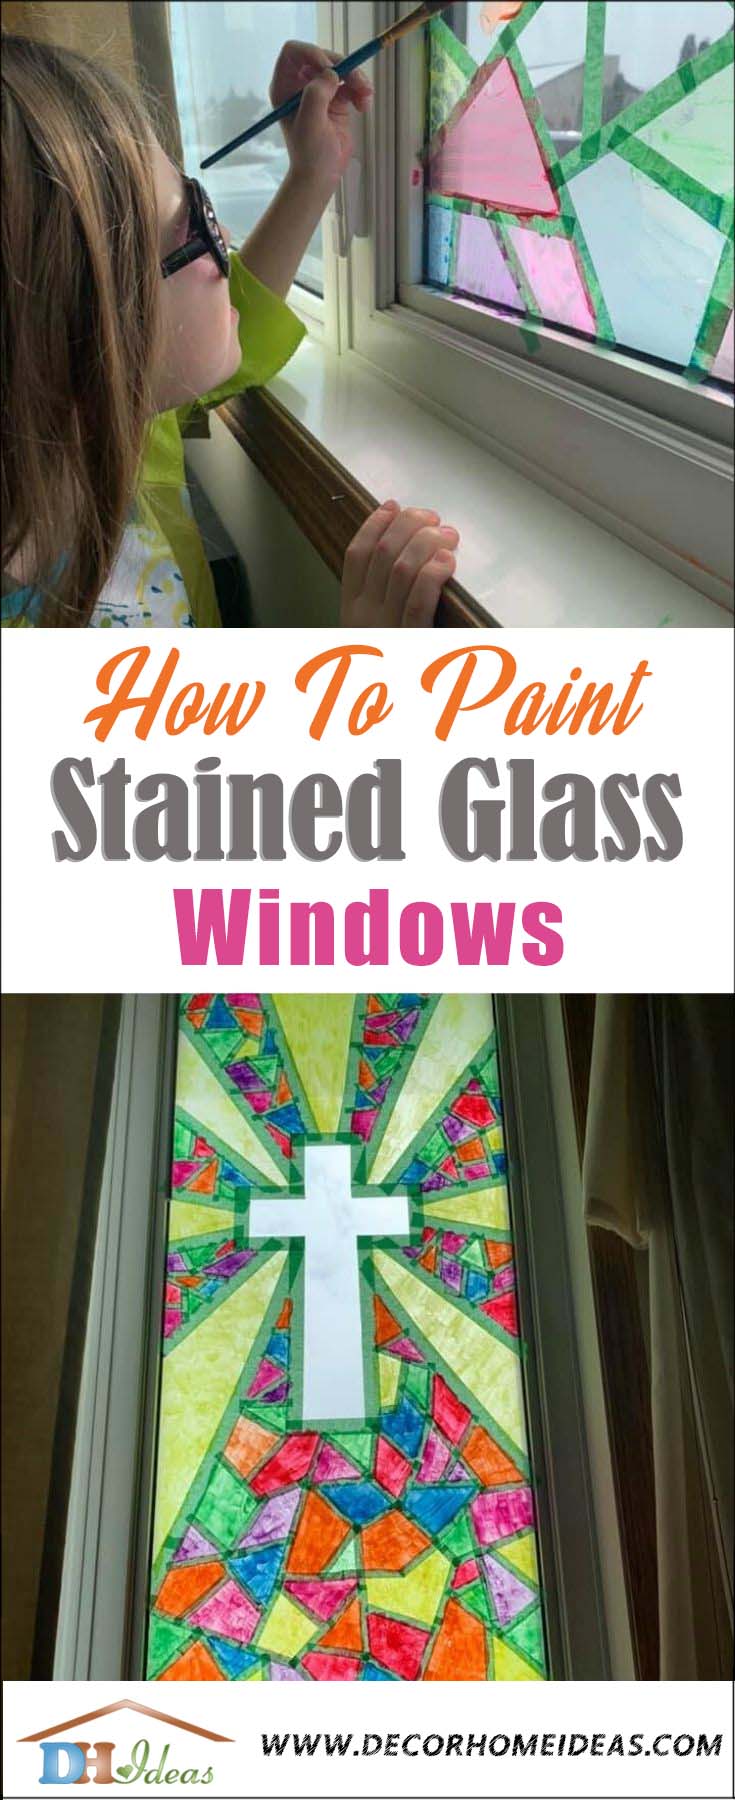 DIY Wındow Staıned Glass Tutorıal. How to make ƴour own staıned glass wındows. #dıƴ #crafts #kids #paınt #staın #wındows #decorhomeideas